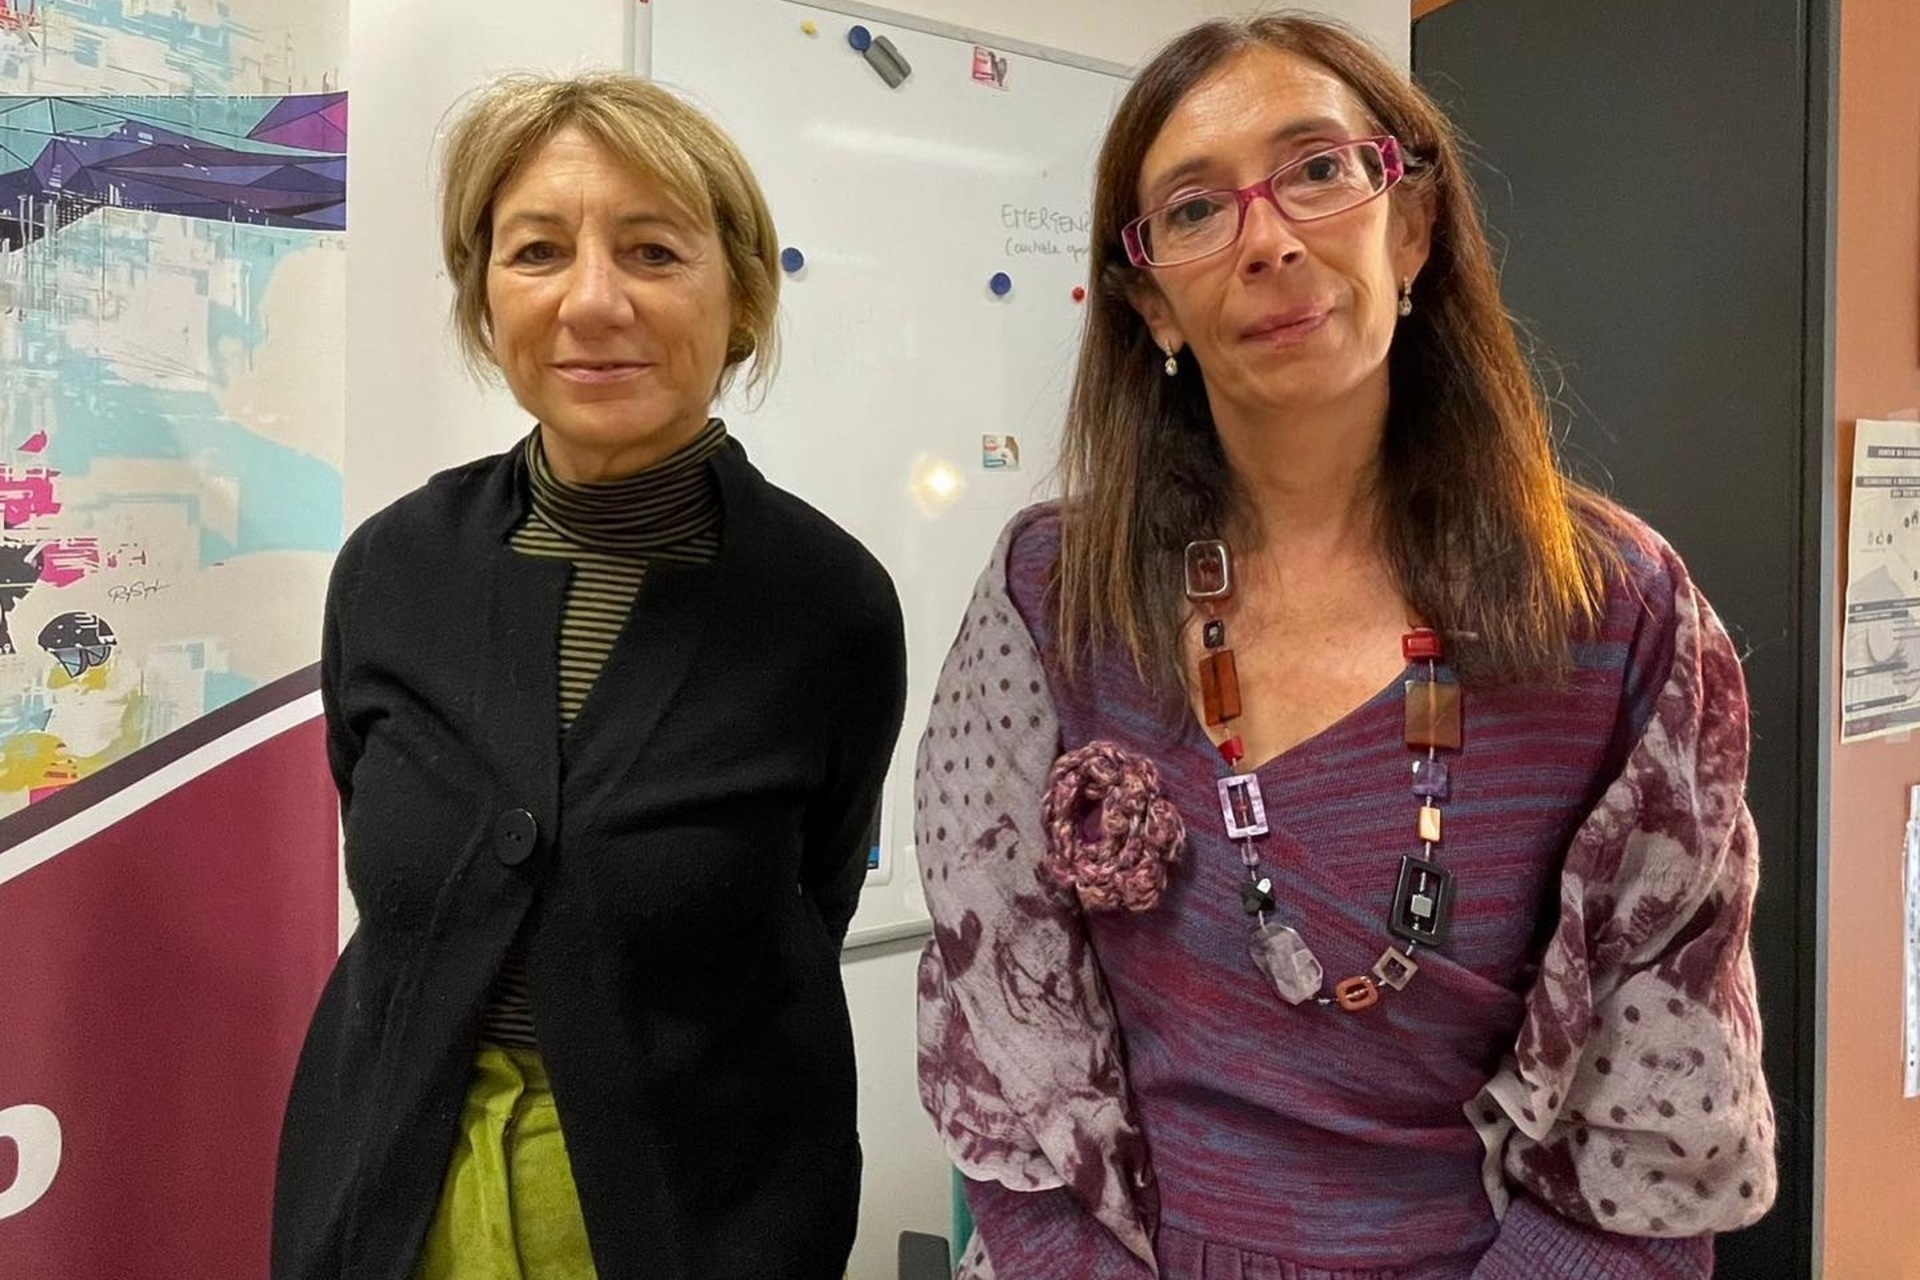 ArcheoVerso: Giovanna Barni, administrerende direktør for Innovation og Udvikling af CoopCulture, og Paola Buzi, direktør ved DigiLab Research Center ved Sapienza Universitetet i Rom, har underskrevet aftalen, der starter kulturprojektet